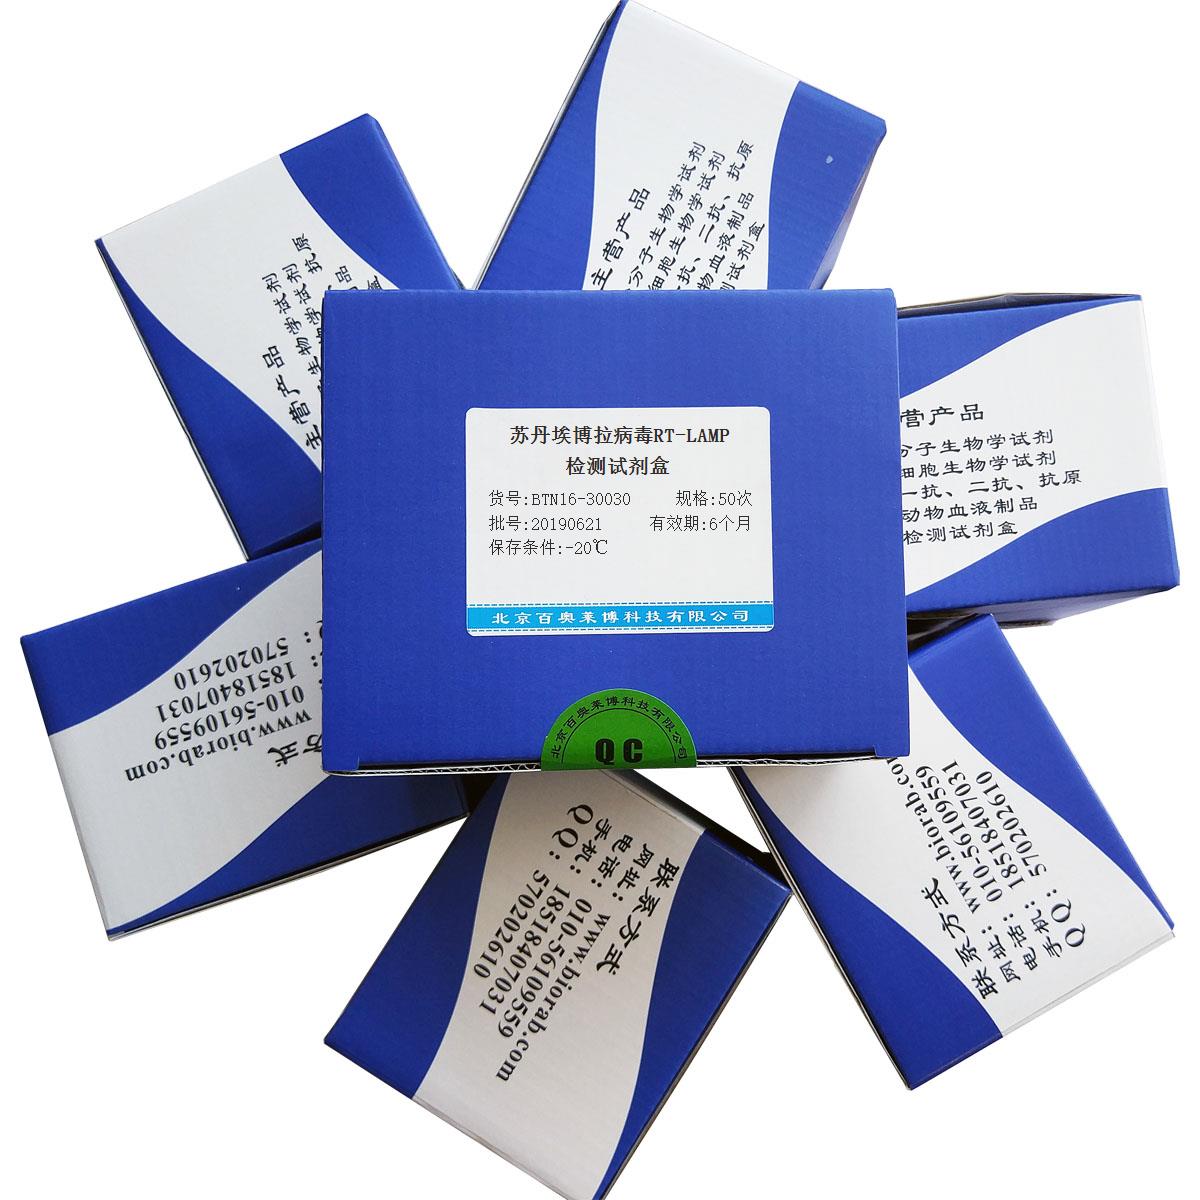 苏丹埃博拉病毒RT-LAMP检测试剂盒北京现货